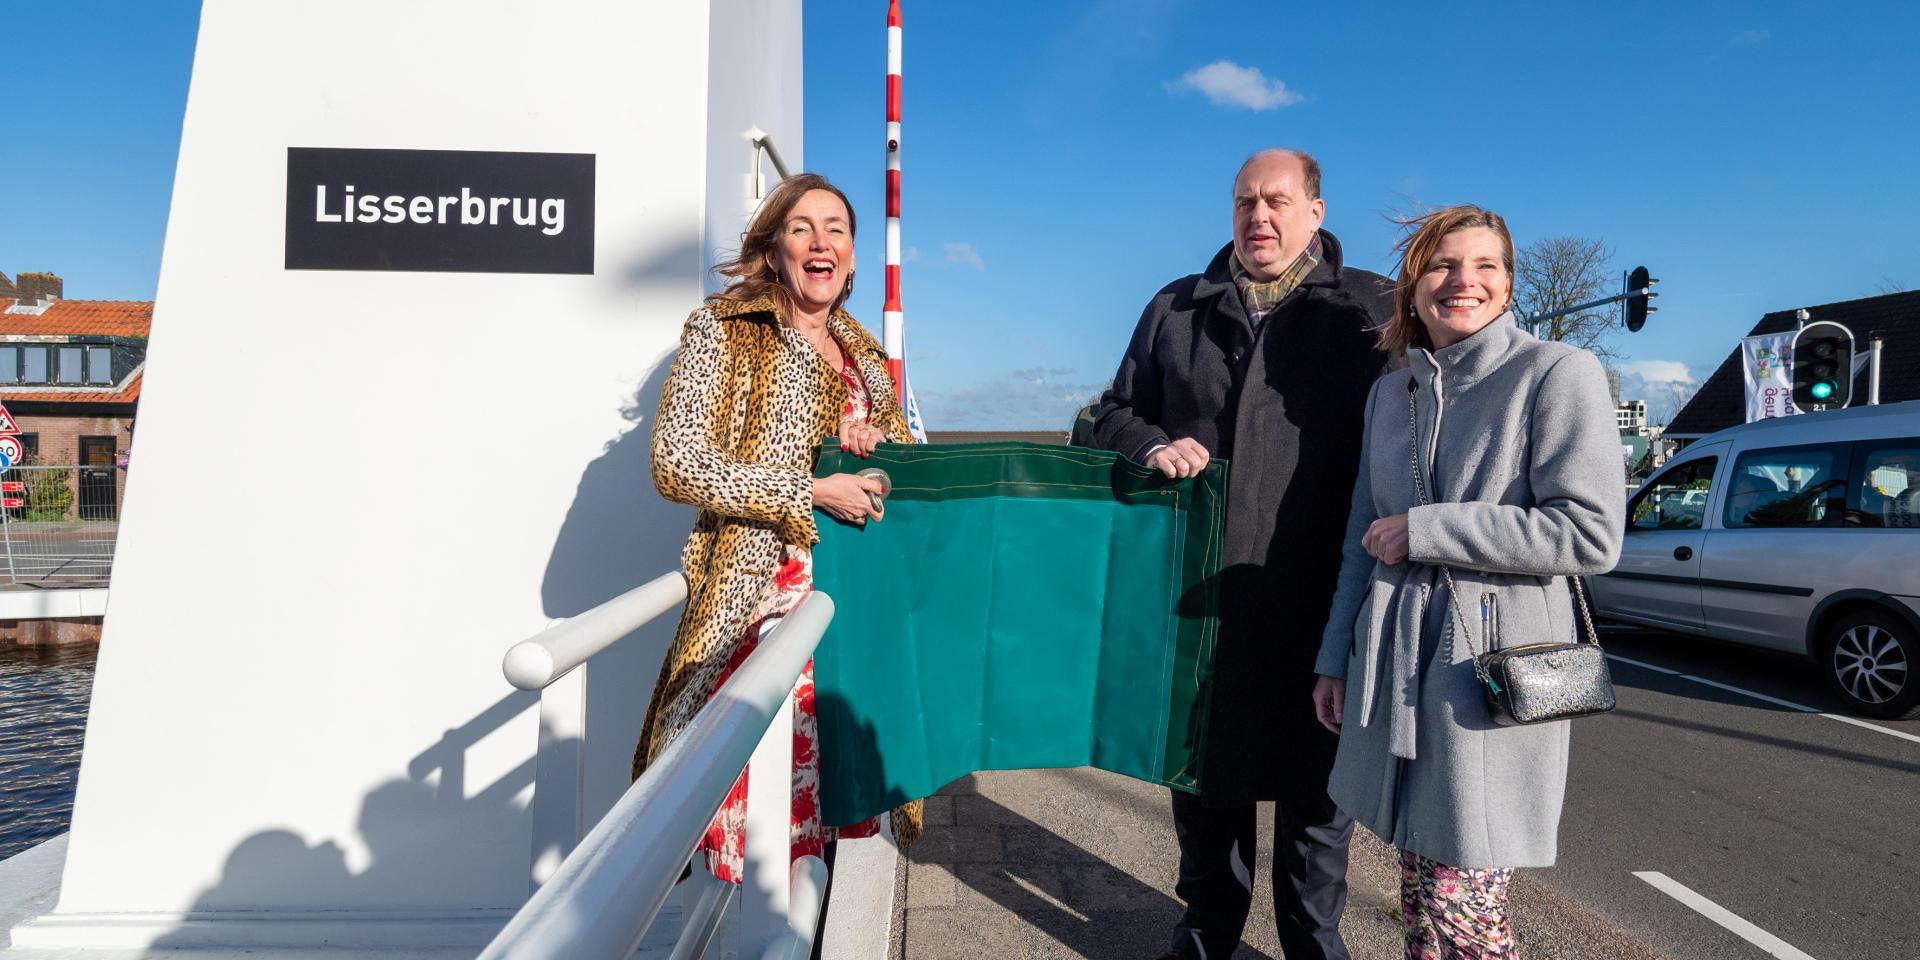 Op vrijdag 24 maart was de officiële heropening van de Lisserbrug